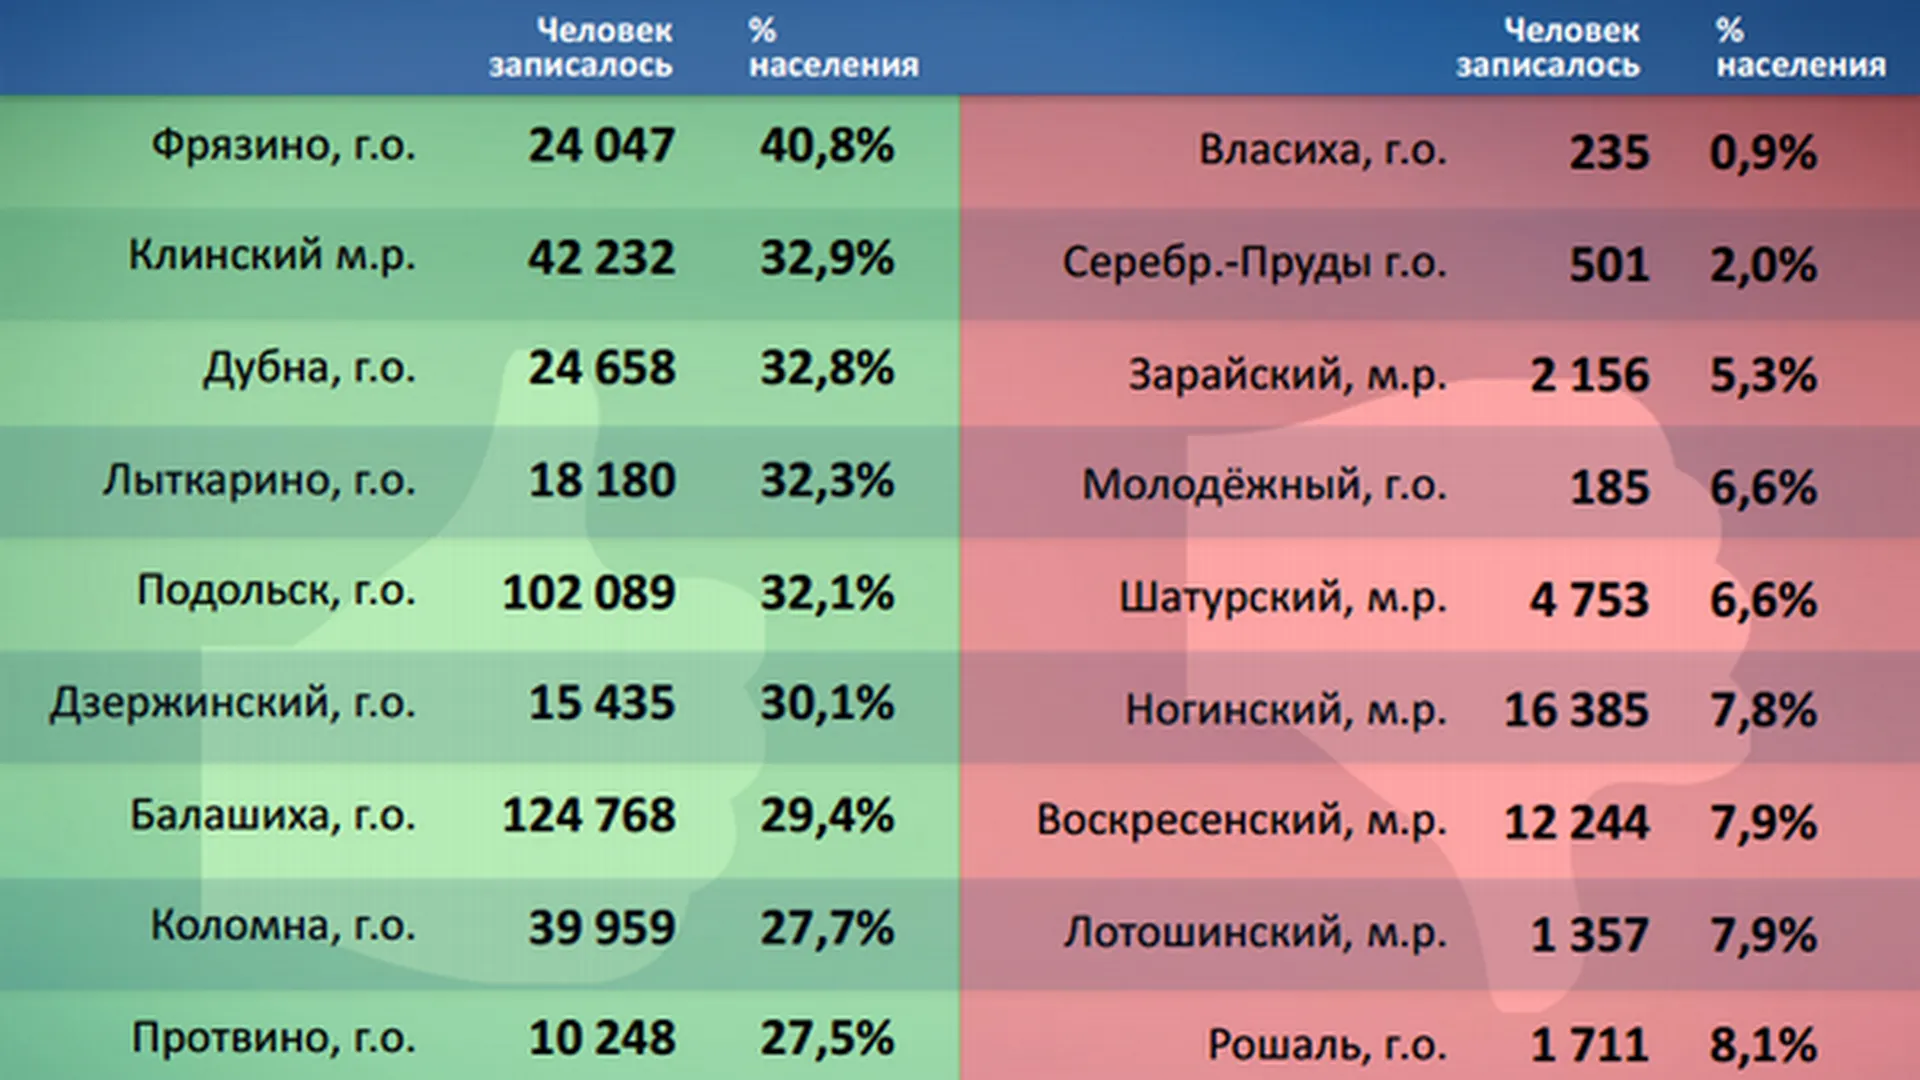 Суслонова назвала рейтинг муниципалитетов по записи к врачам через интернет